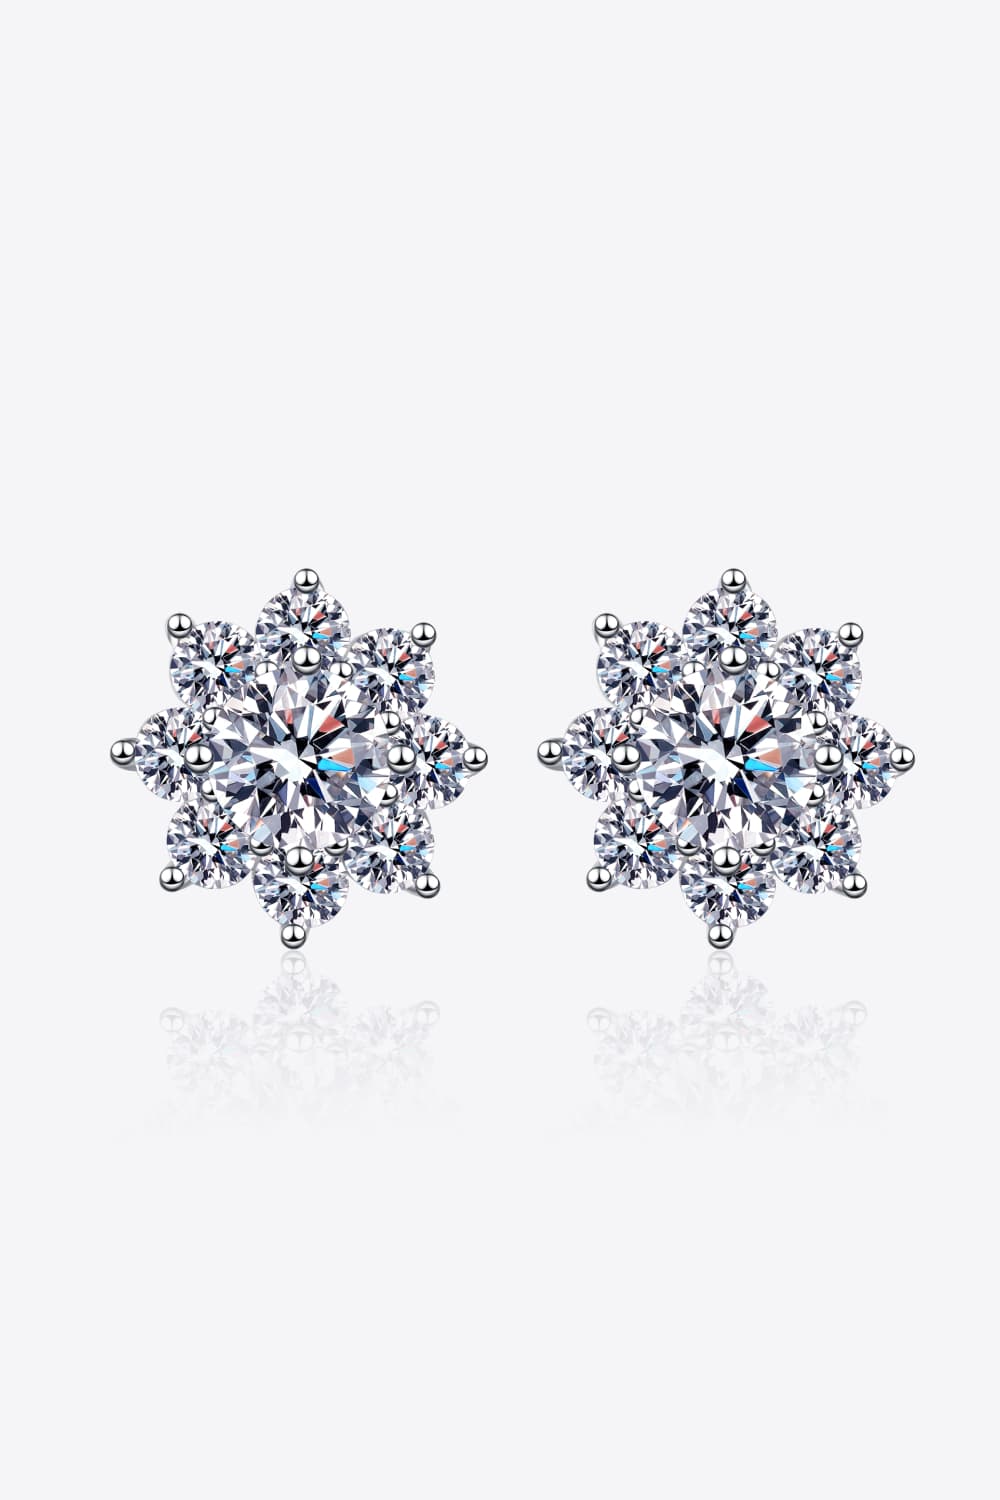 1 Carat Moissanite 925 Sterling Silver Flower Earrings 💜